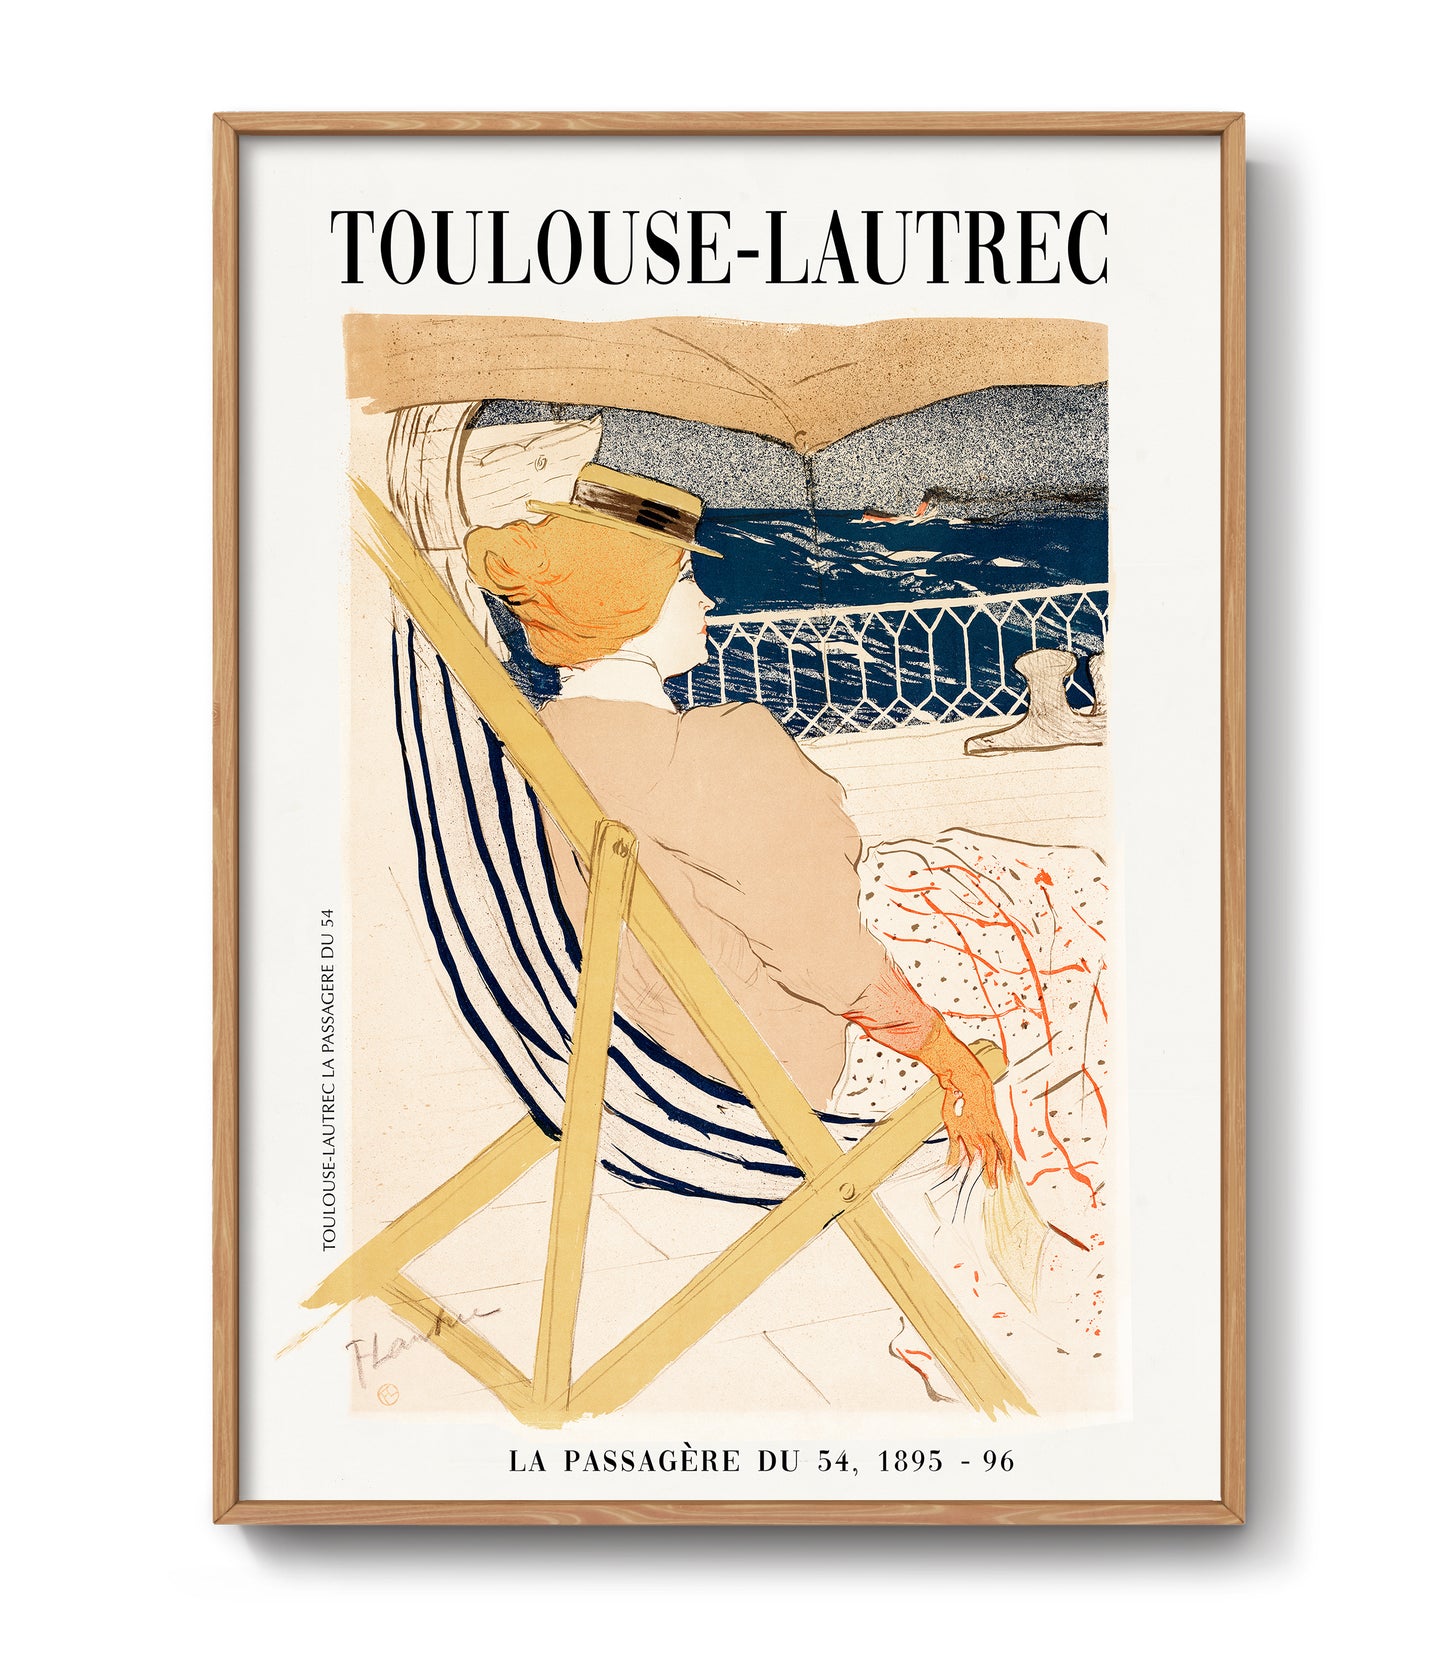 La Passagere du 54 by Henri de Toulouse-Lautrec